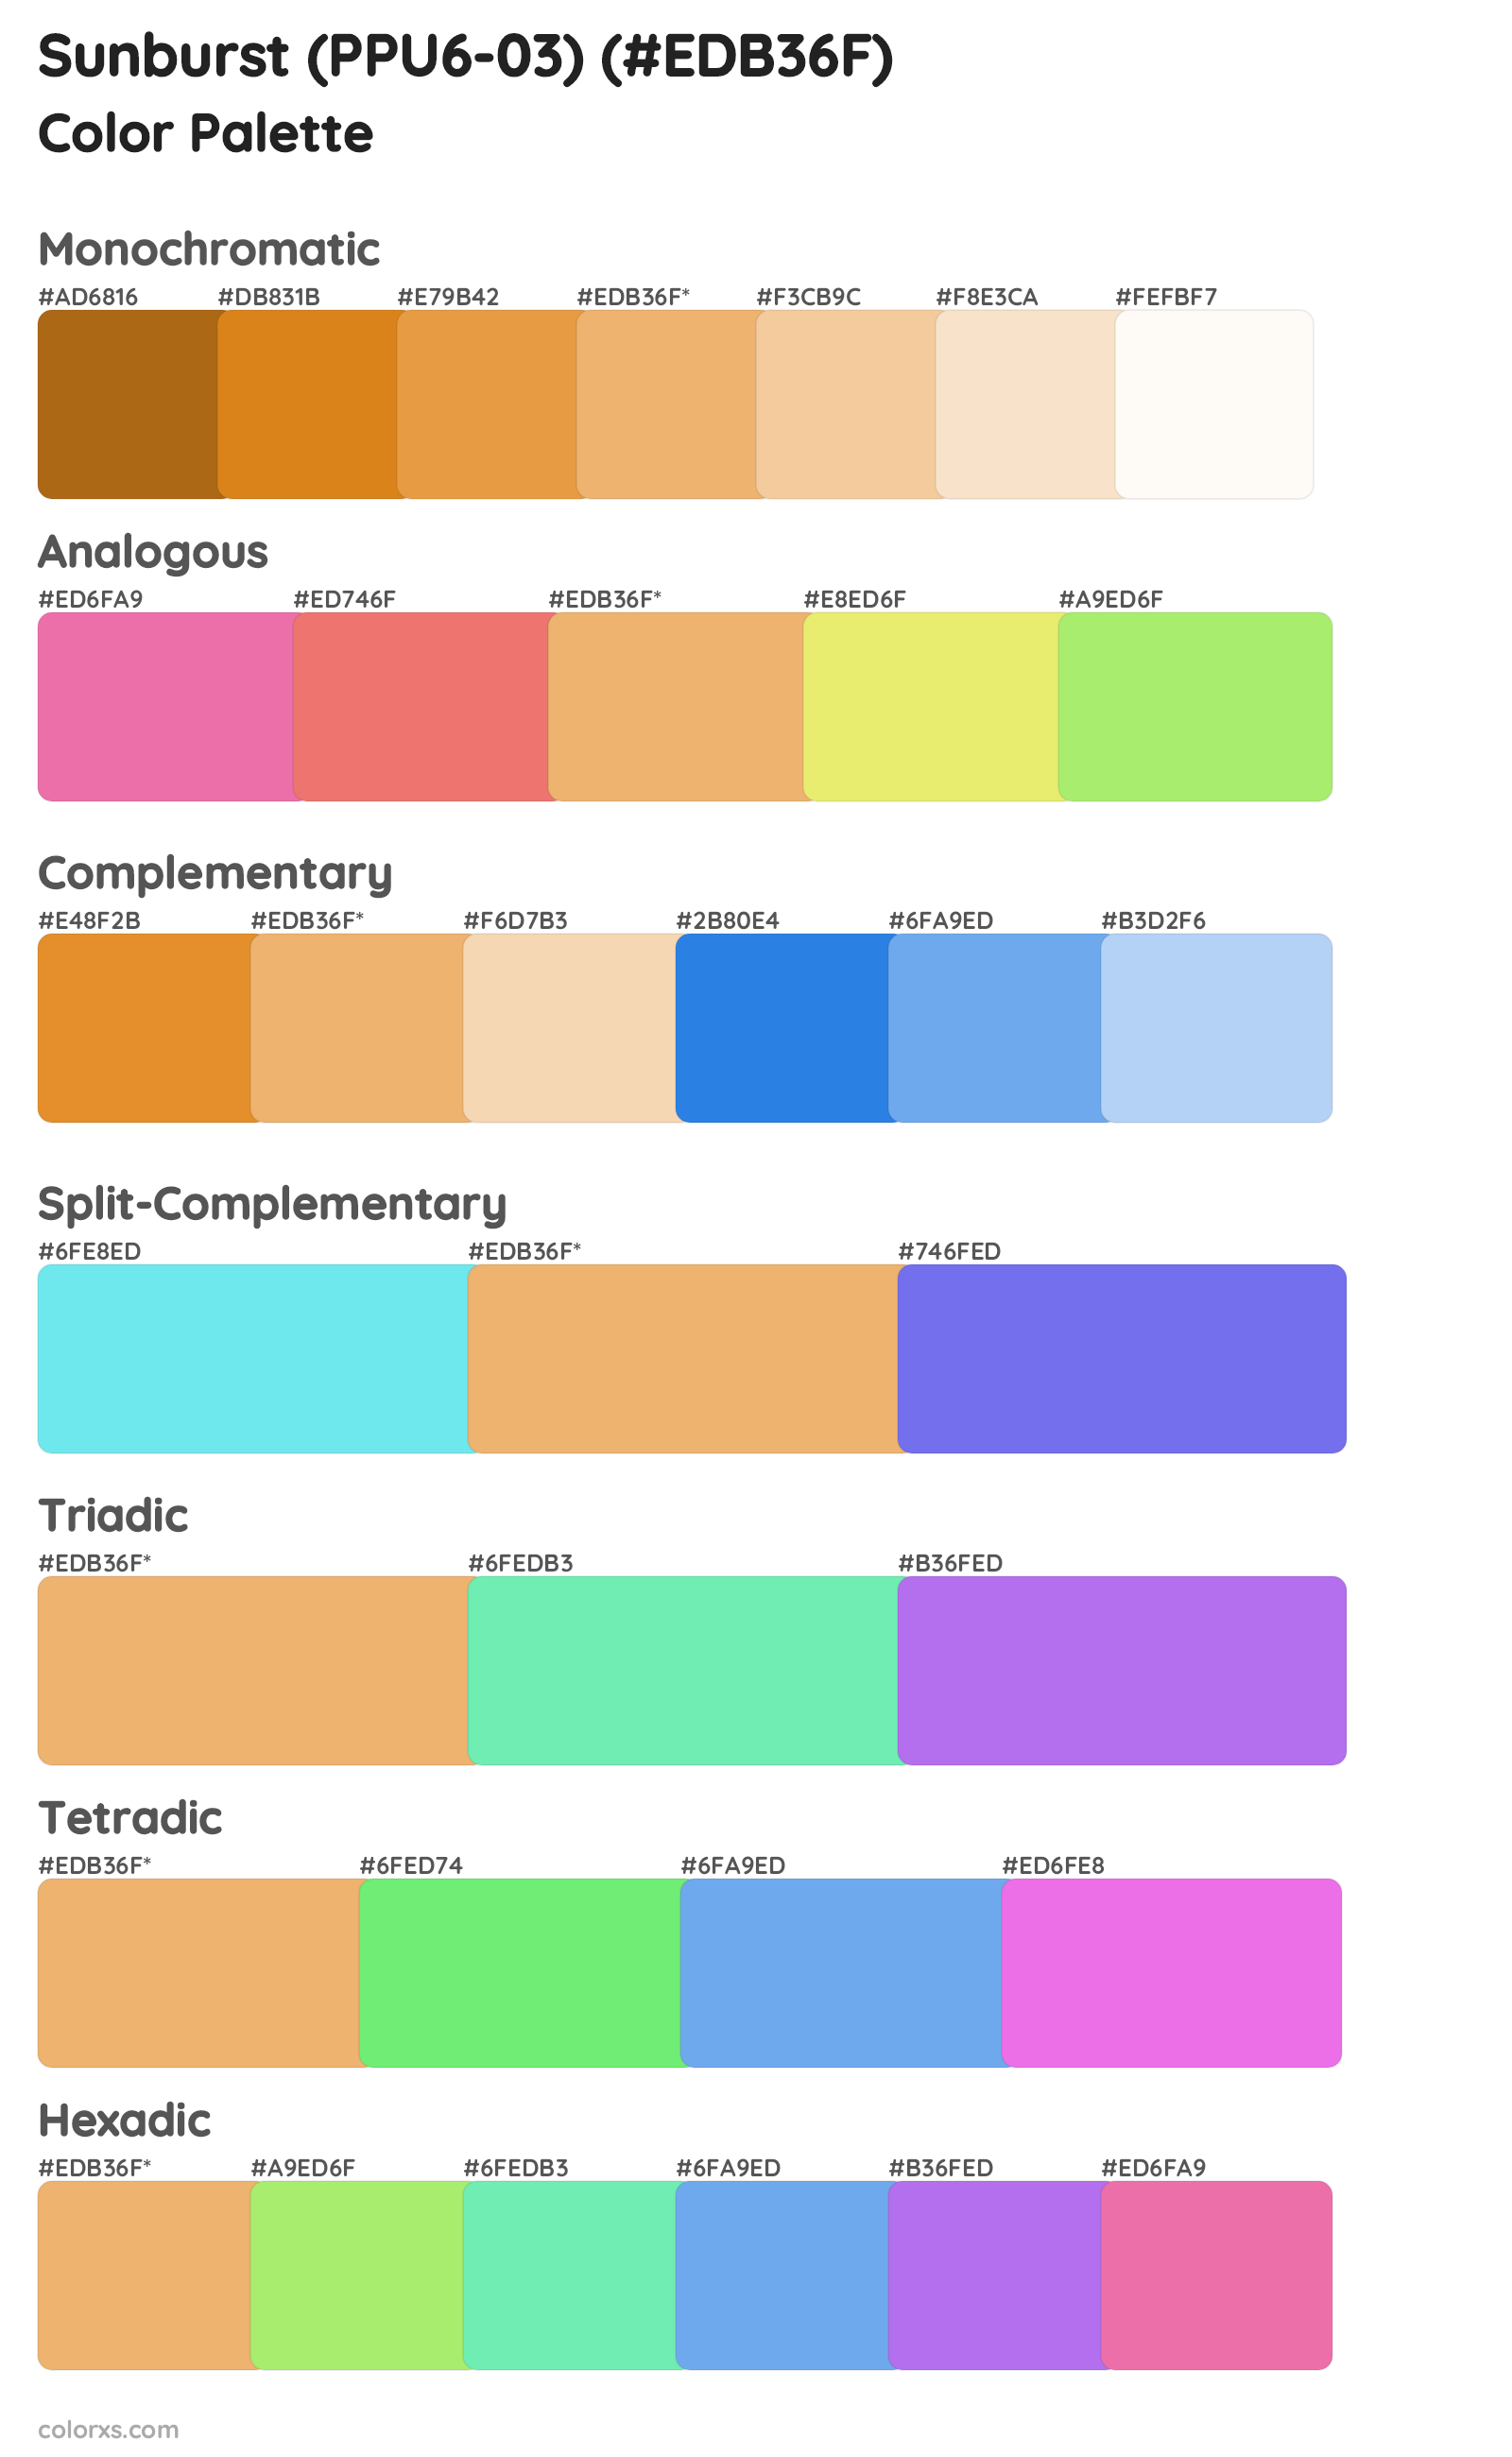 Sunburst (PPU6-03) Color Scheme Palettes